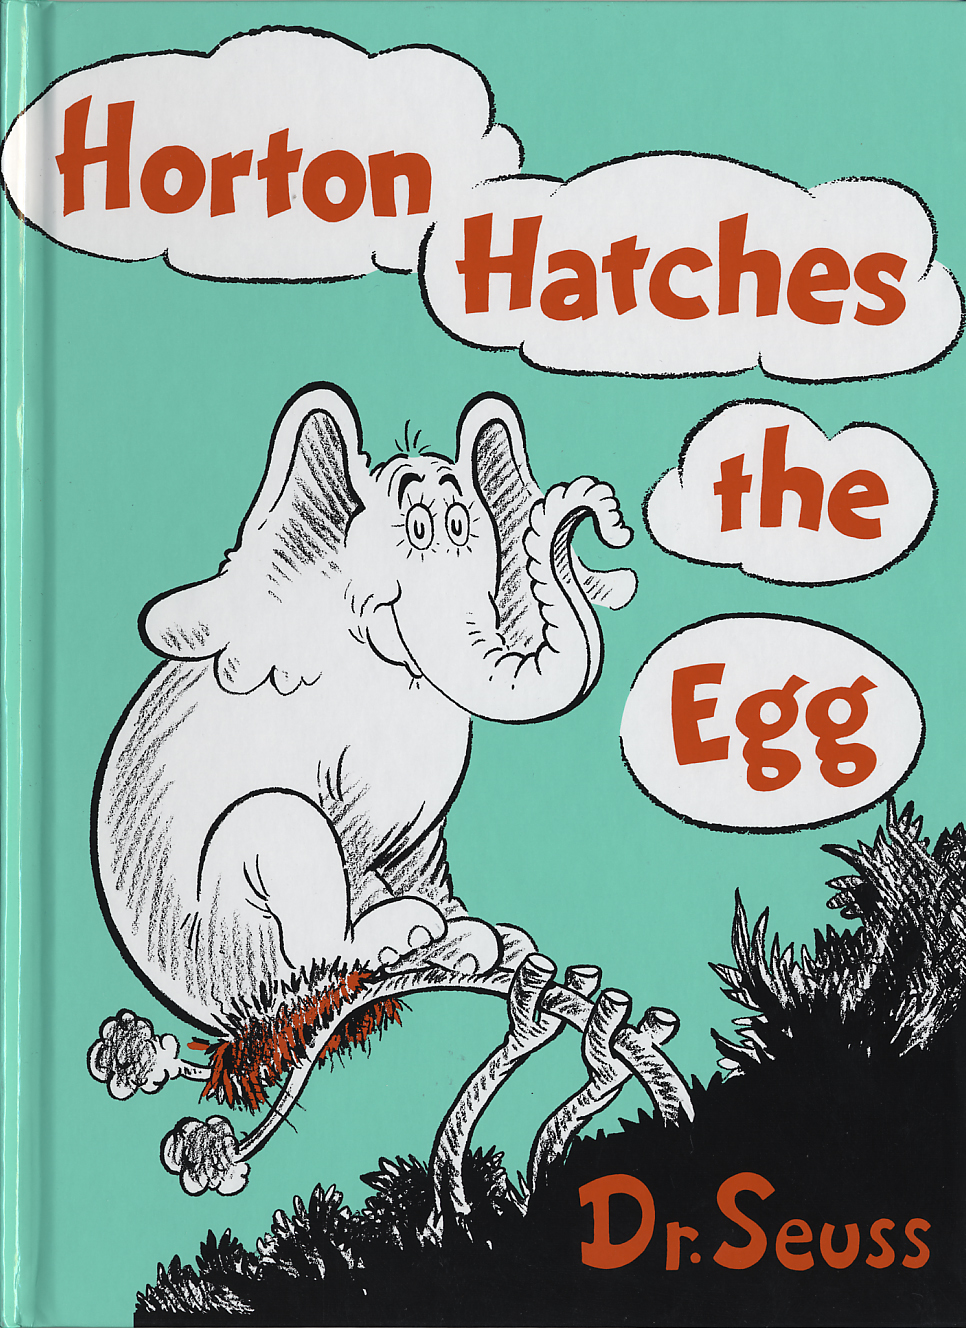 Dr. Seuss, Horton Hatches the Egg (1940)